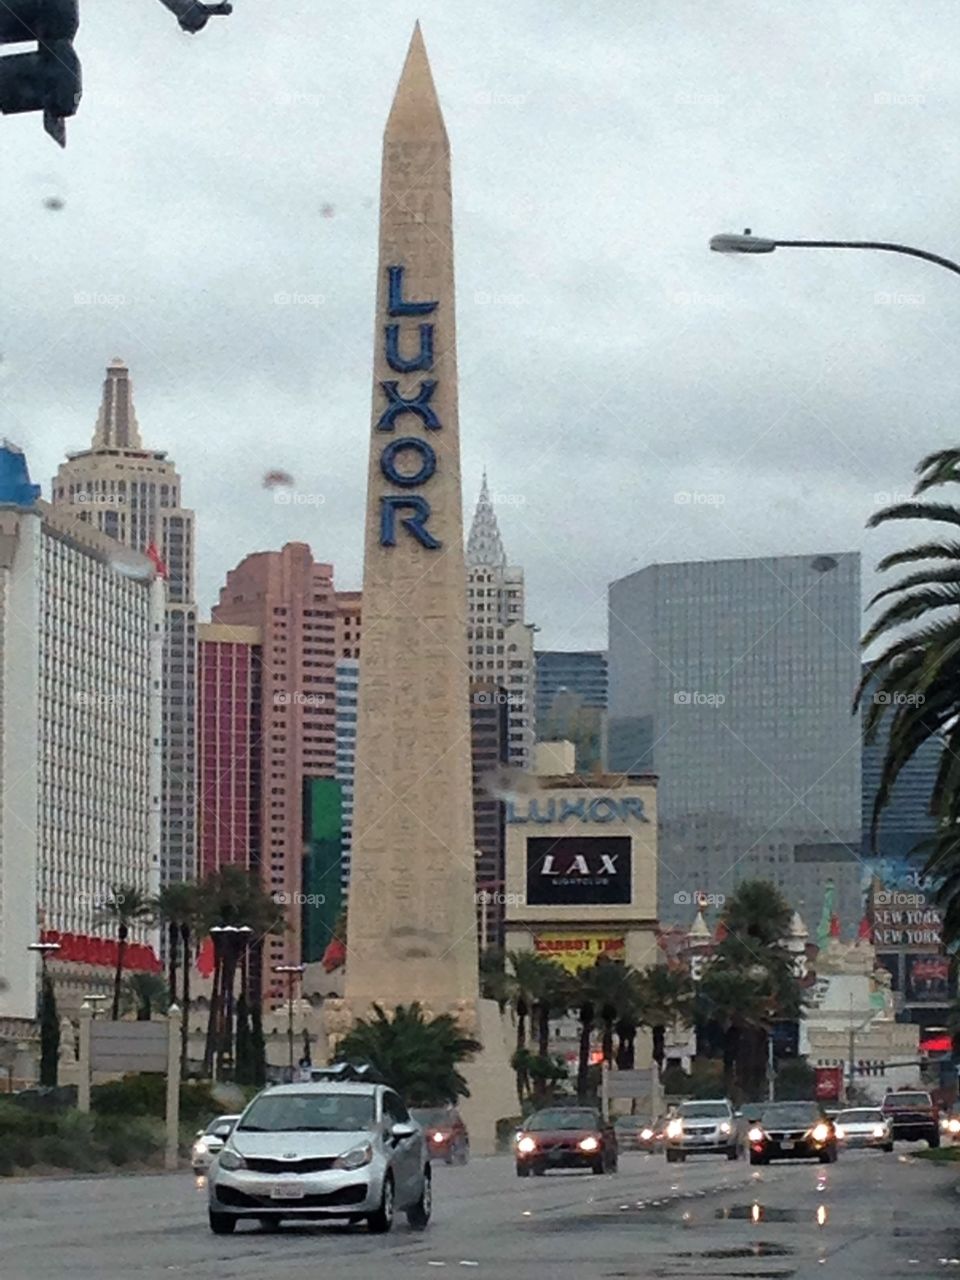 Las Vegas! 